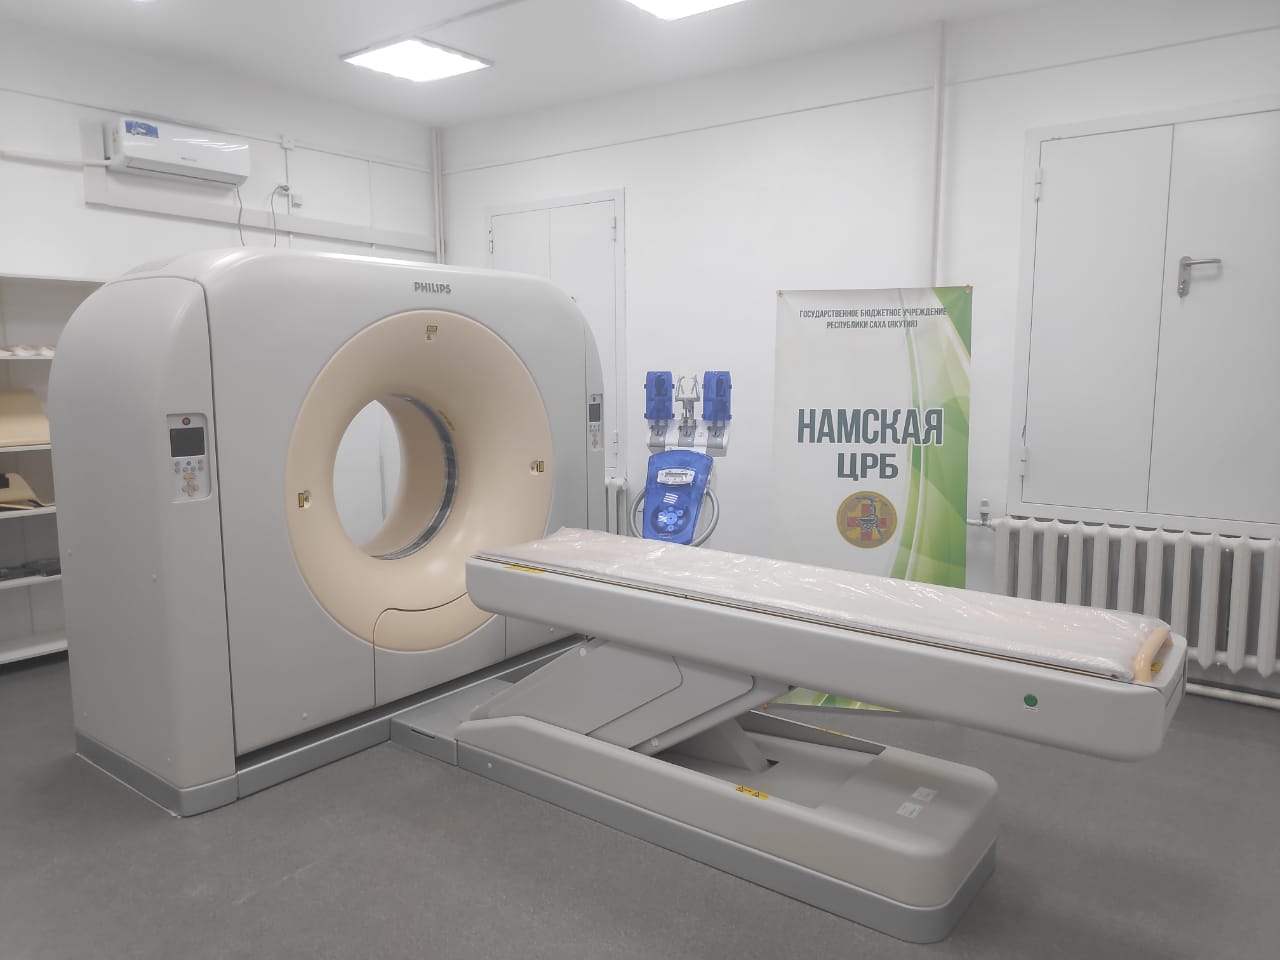 Новый компьютерный томограф появился в Намской больнице в Якутии